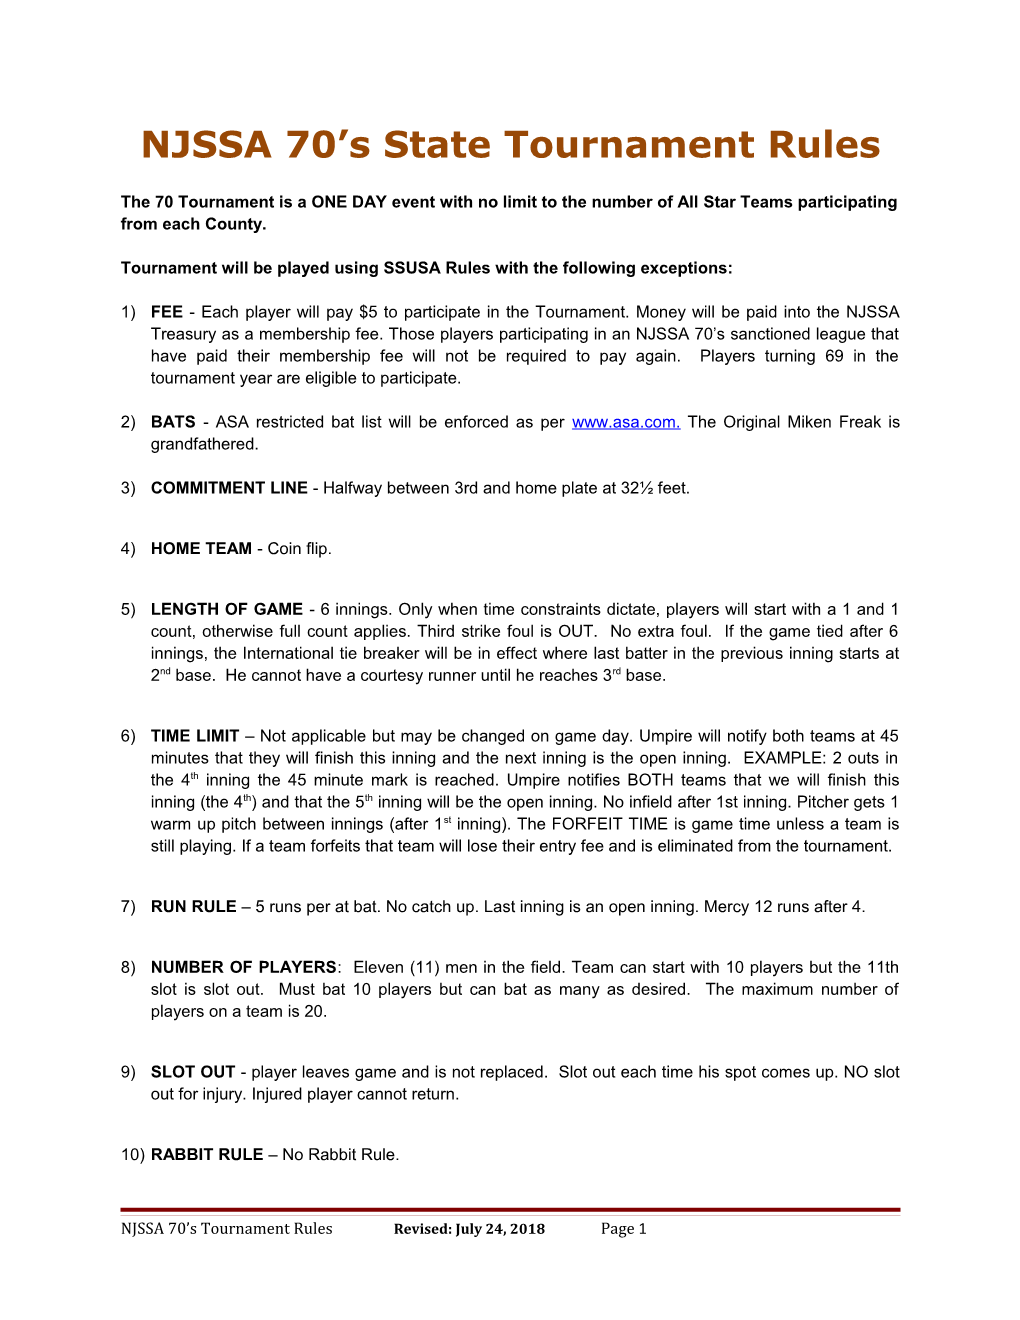 NJSSA 70'S Tournament Rules